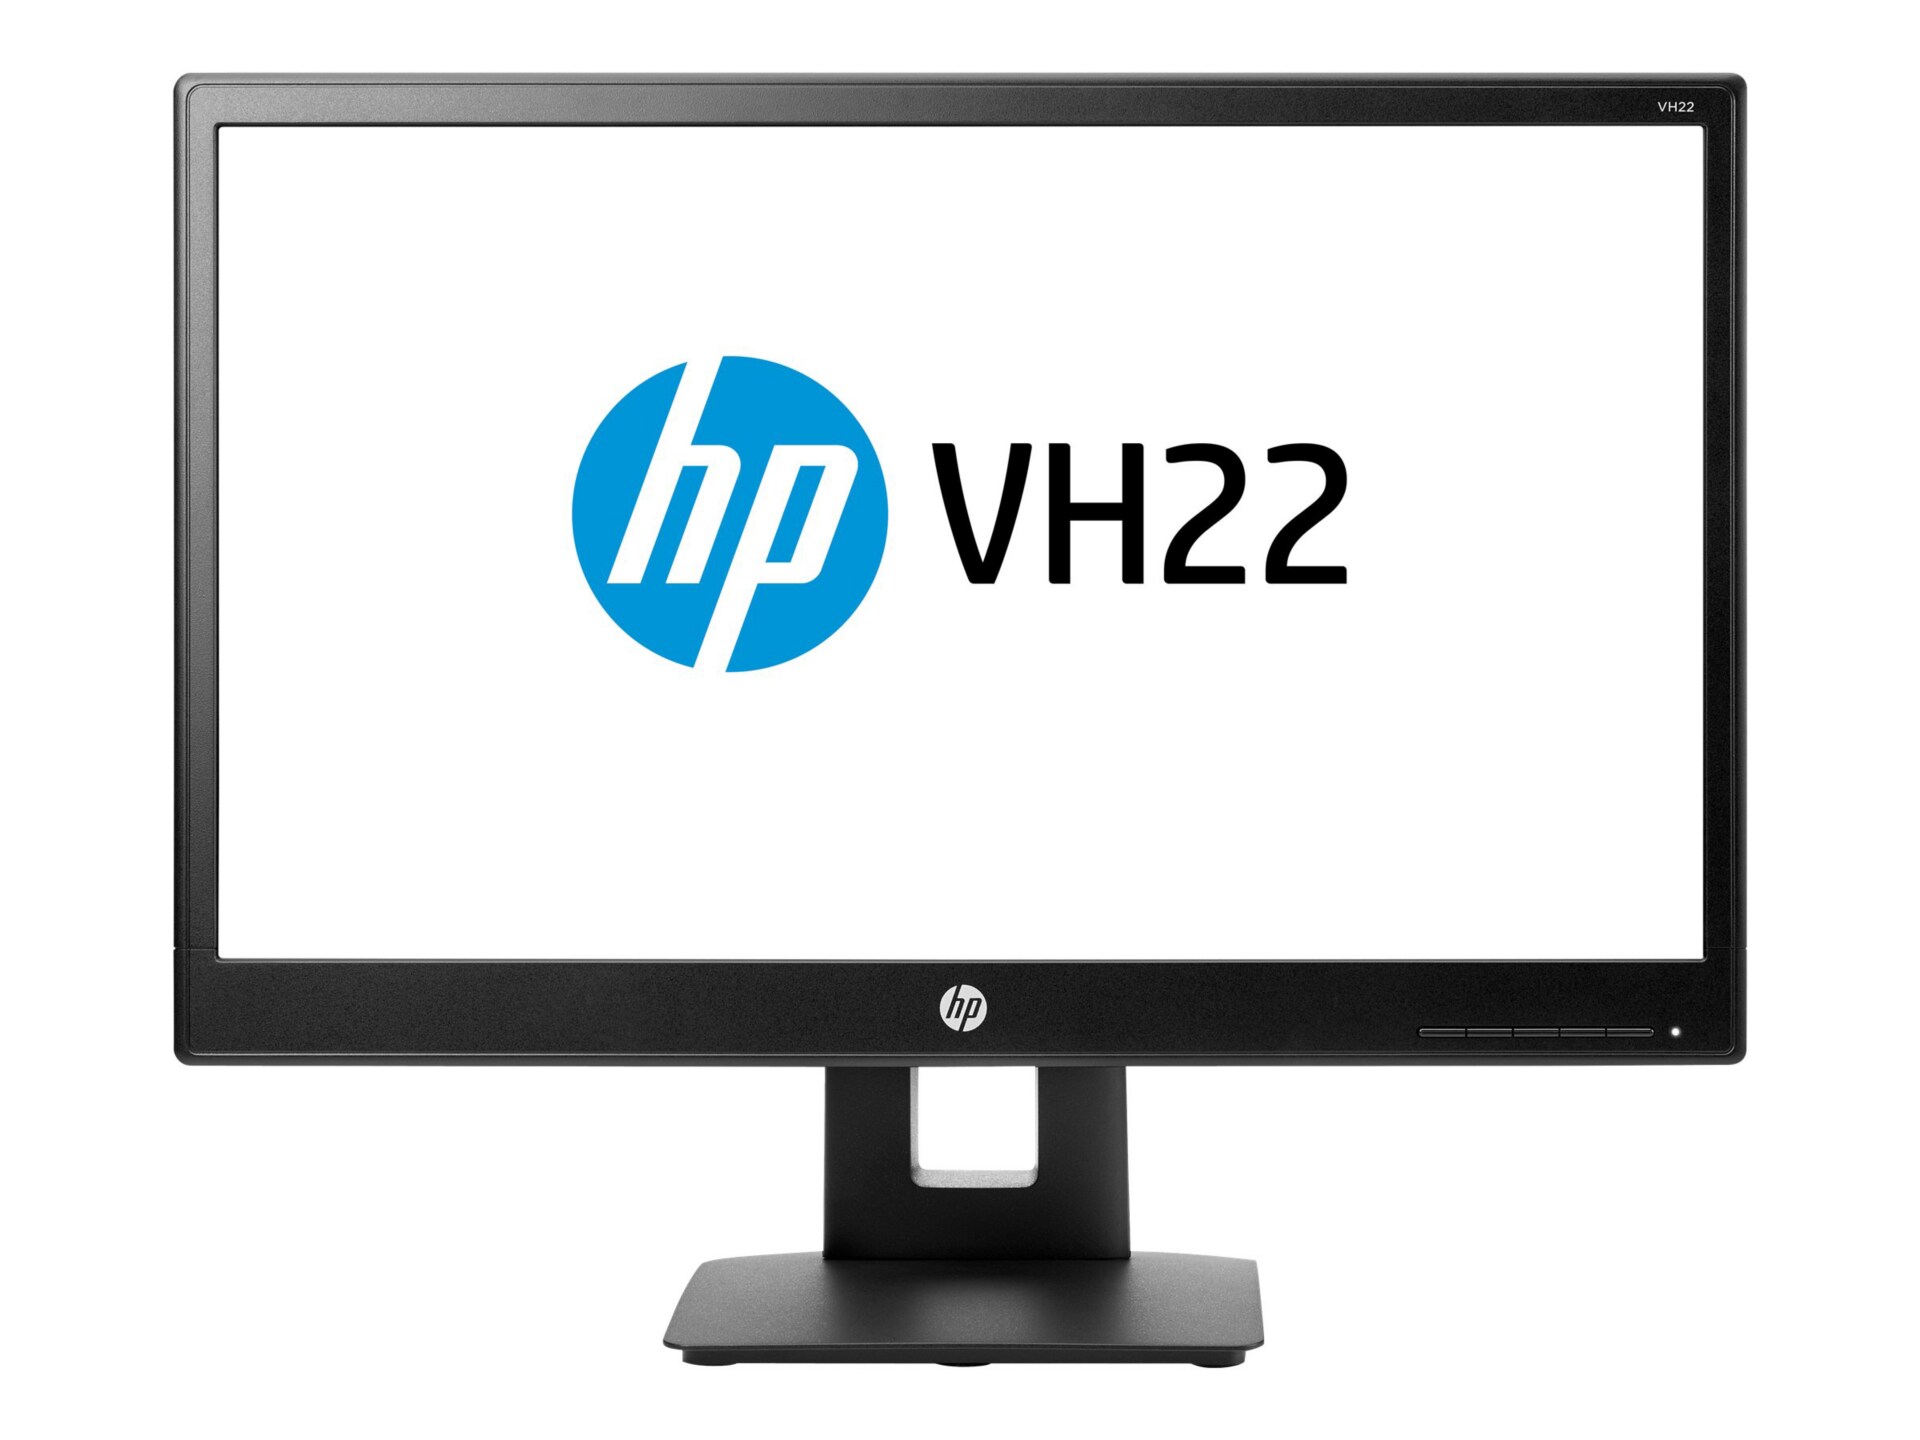 HP VH22 - LED monitor - 21.5"